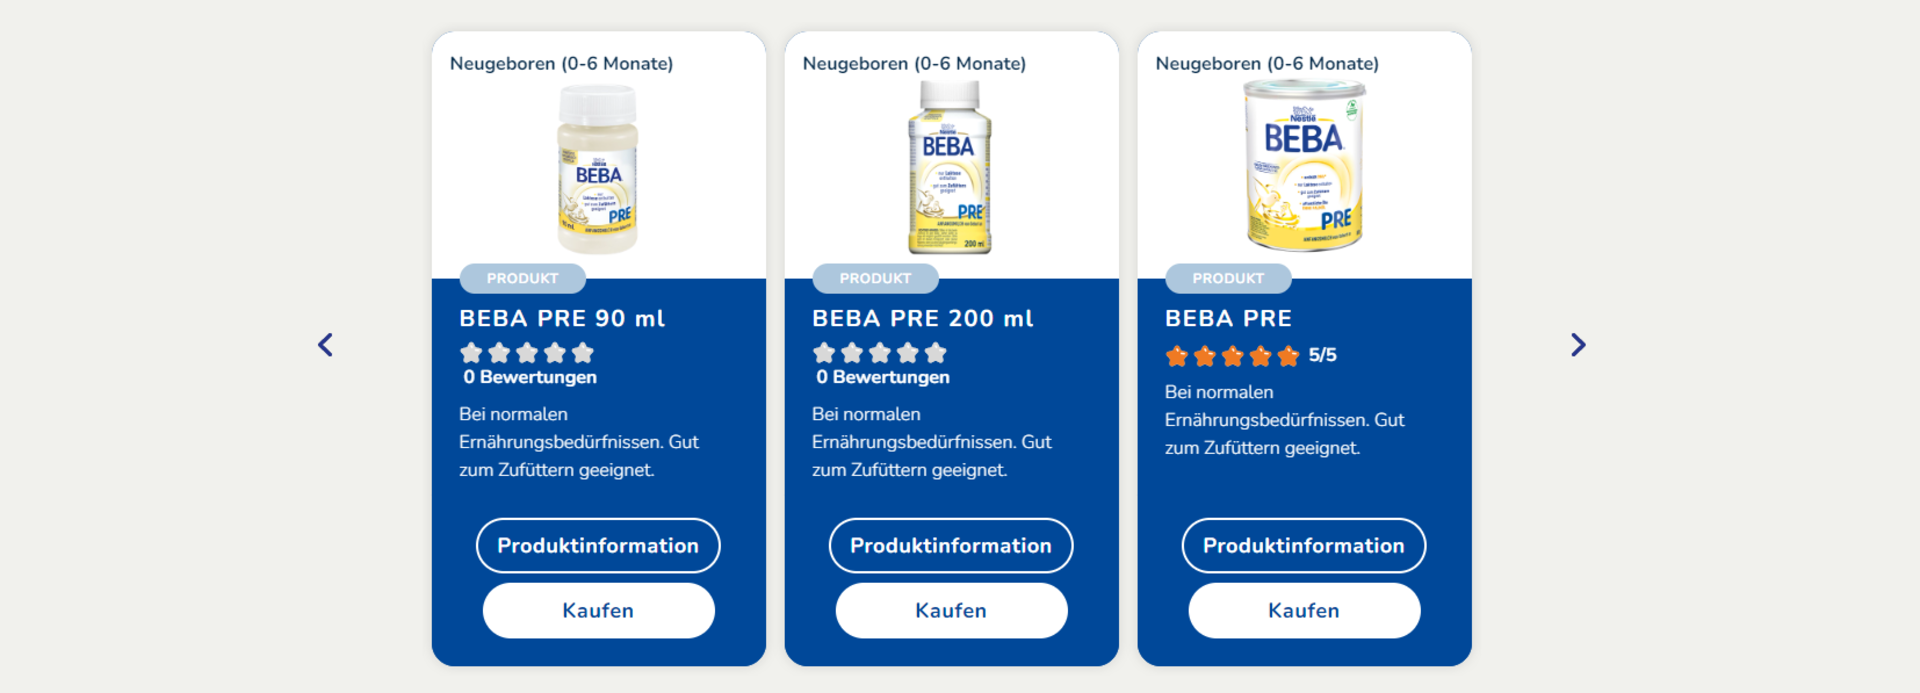 Beba Pre Milch: Drei Produkte werden auf der Website von Nestlé Beba vorgestellt